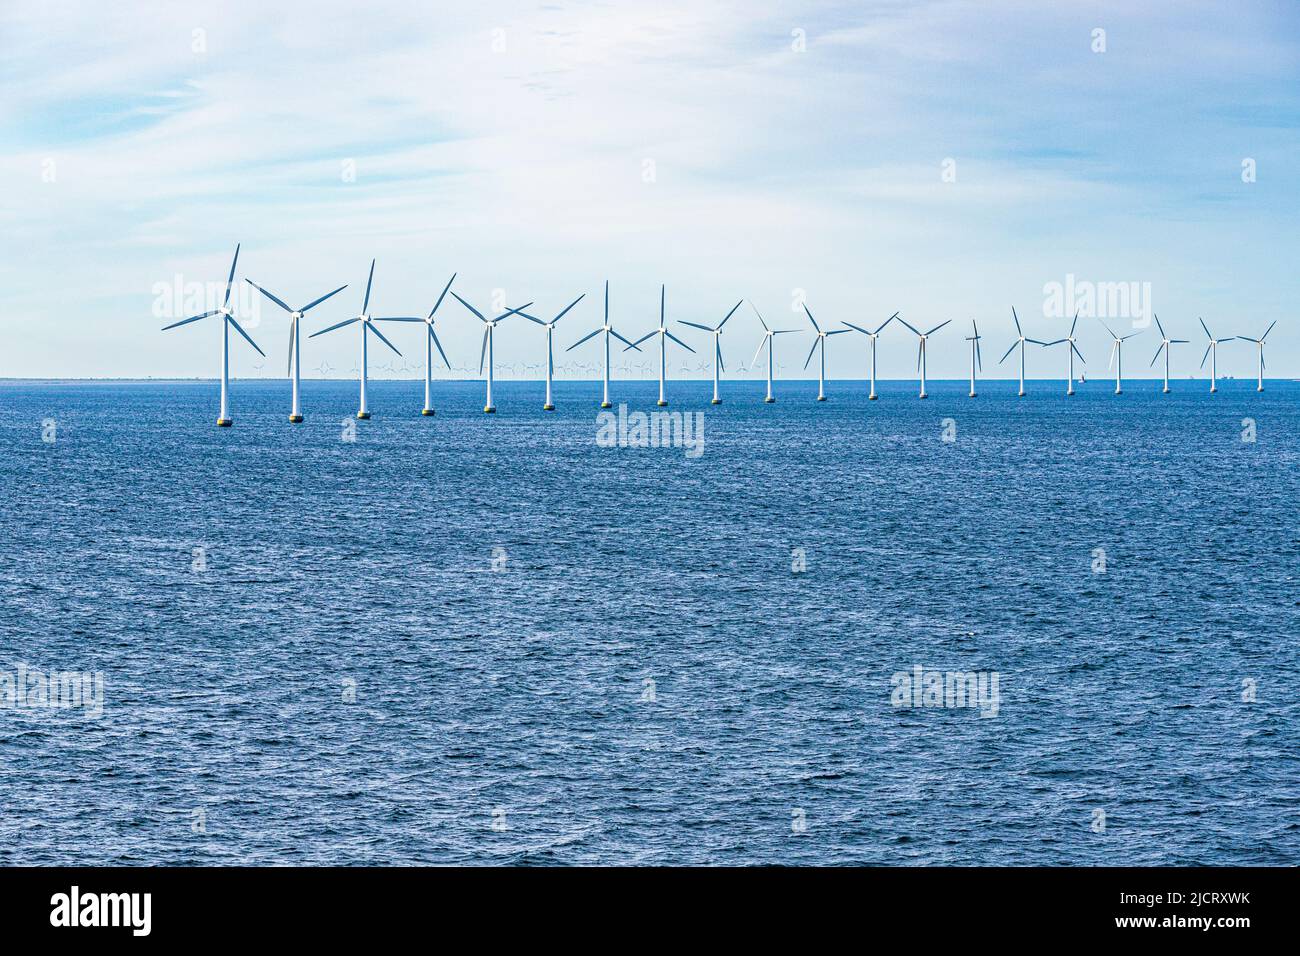 The Middelgrunden offshore wind farm in the Øresund near Copenhagen, Denmark. Stock Photo